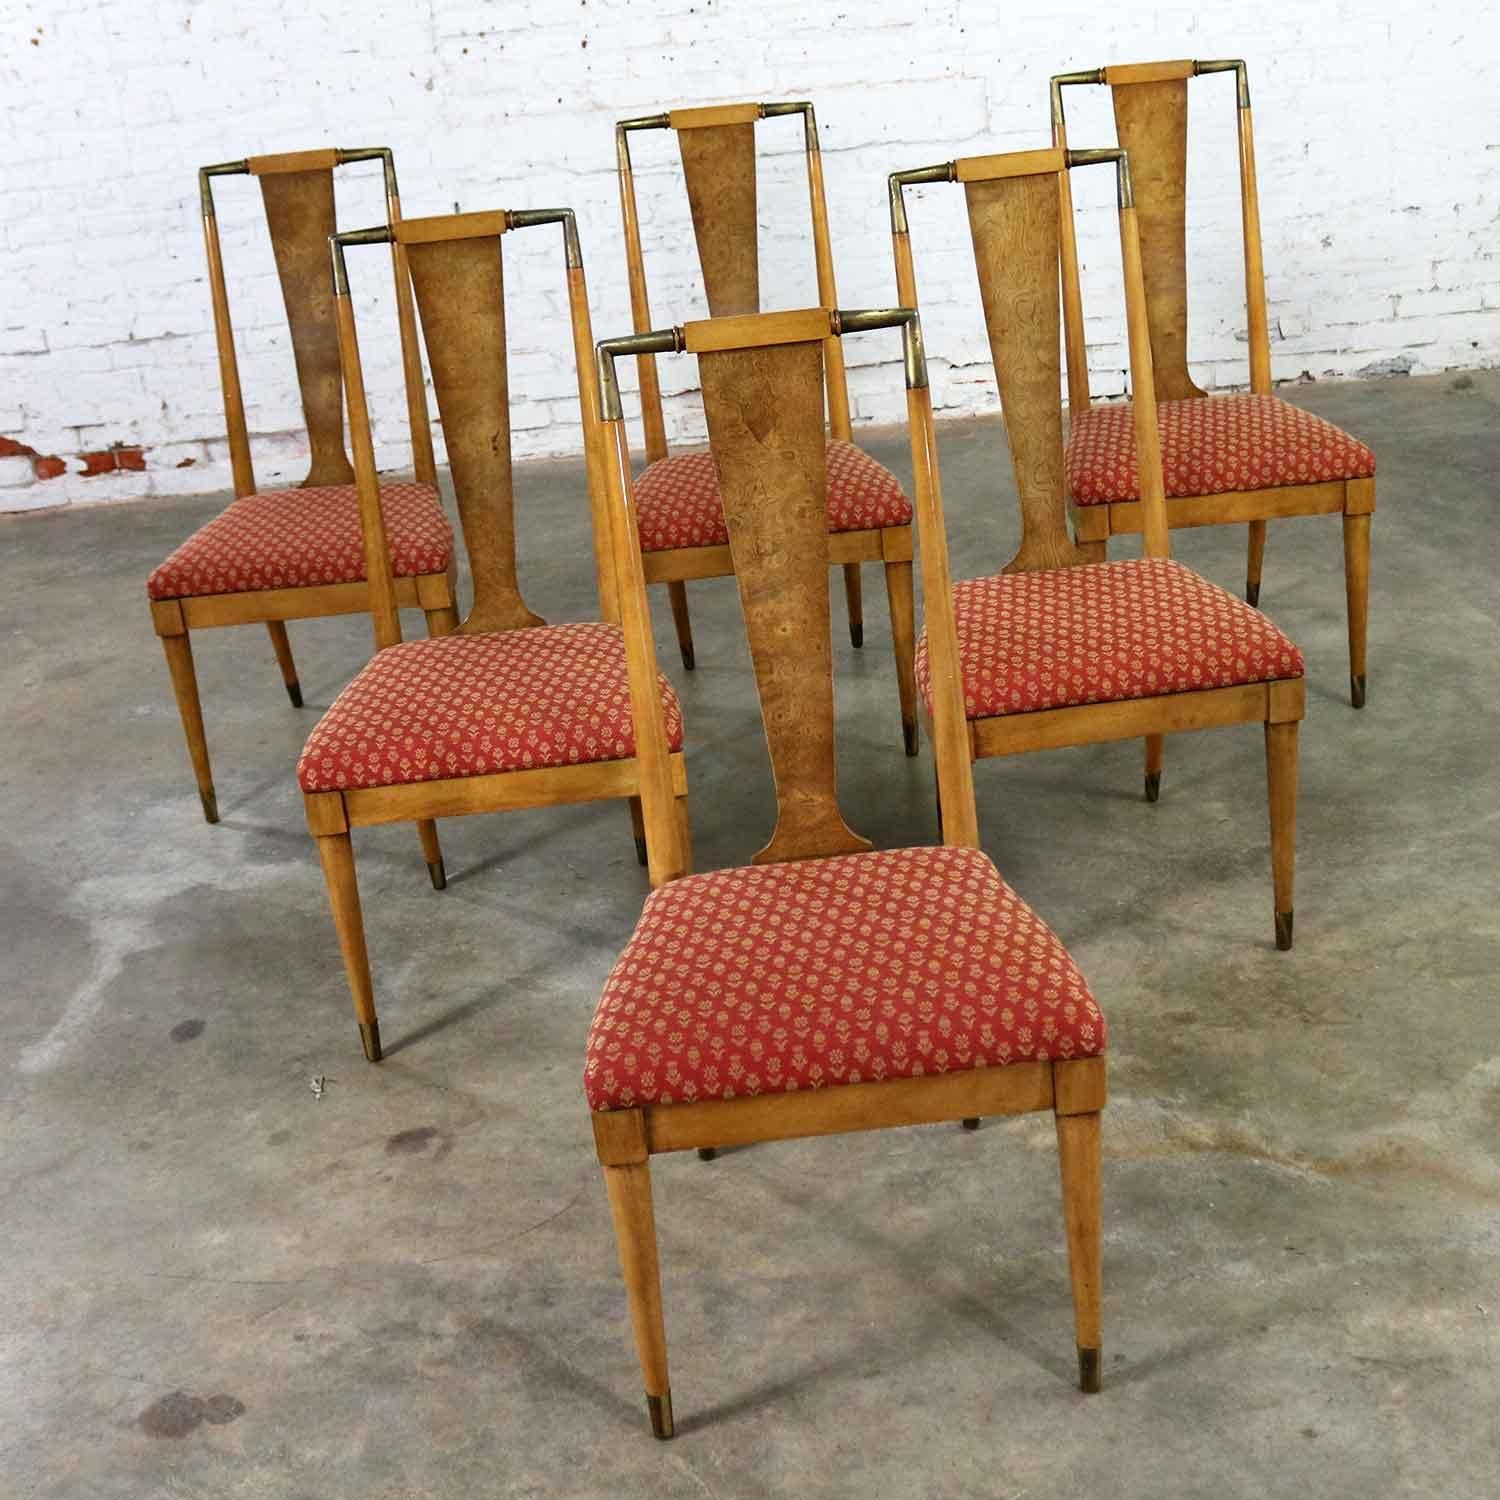 Magnifique ensemble de six chaises de salle à manger du milieu du siècle dernier de la ligne Contempora de J.L.Metz Furniture, conçue par William J. Clingman. Ils ne sont pas marqués mais bien documentés et en fabuleux état vintage, vers 1959.

Si